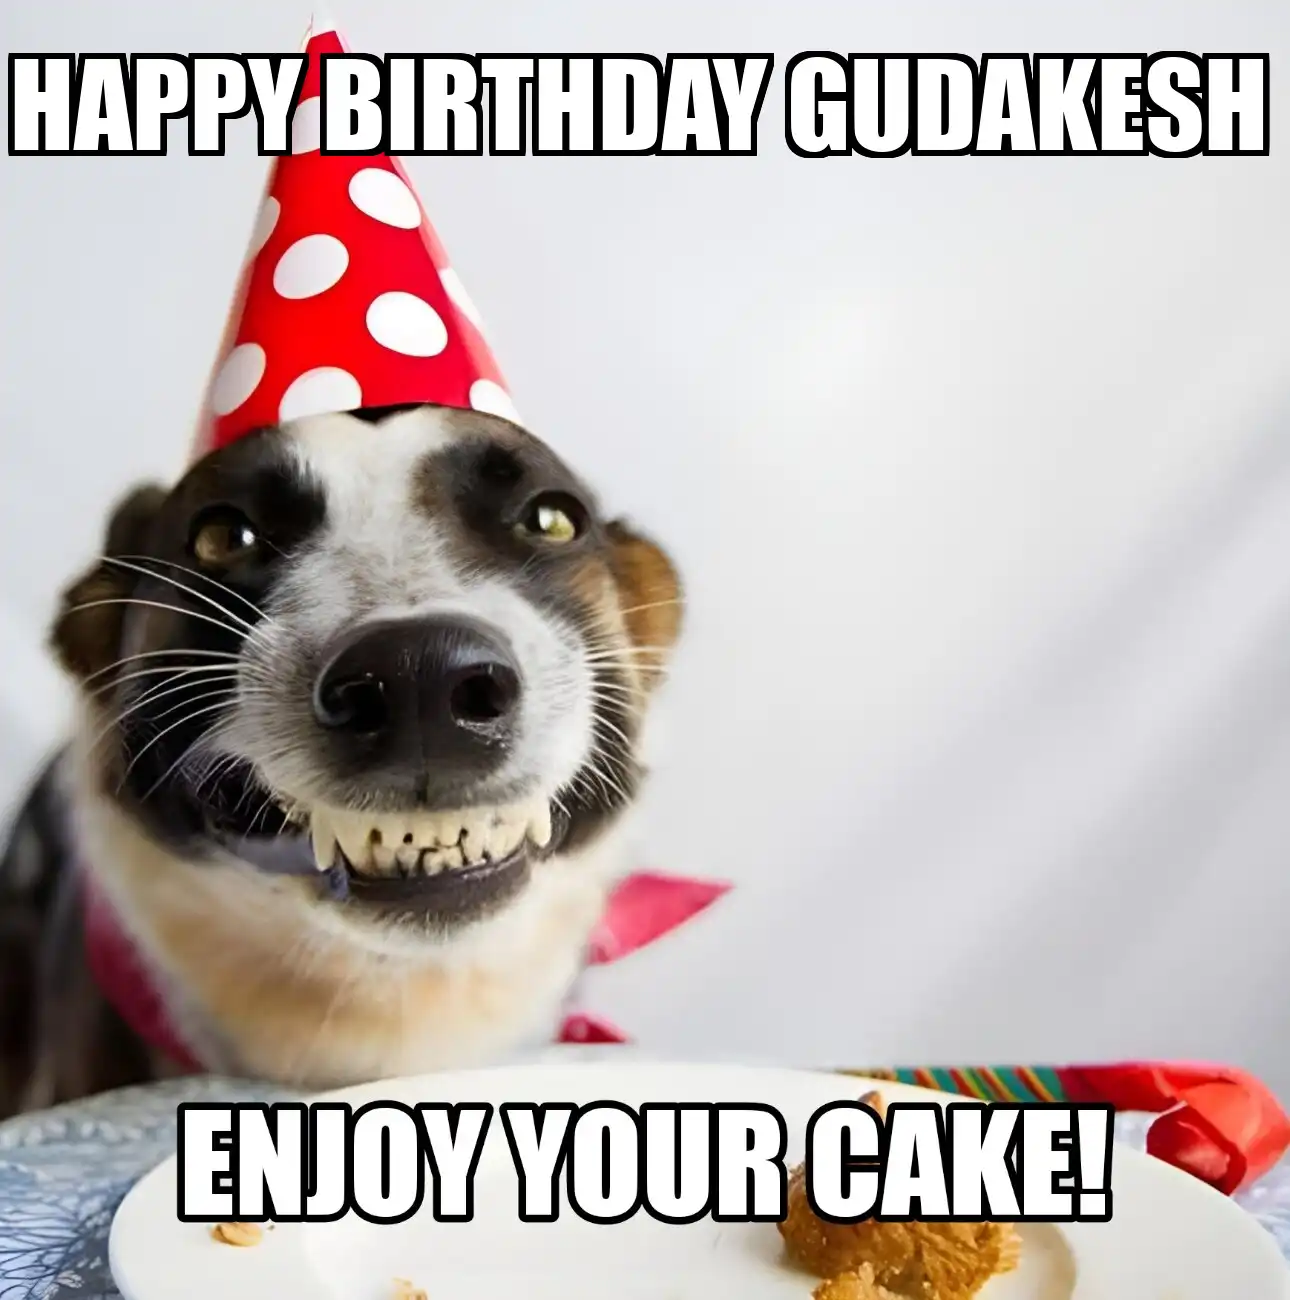 Happy Birthday Gudakesh Enjoy Your Cake Dog Meme